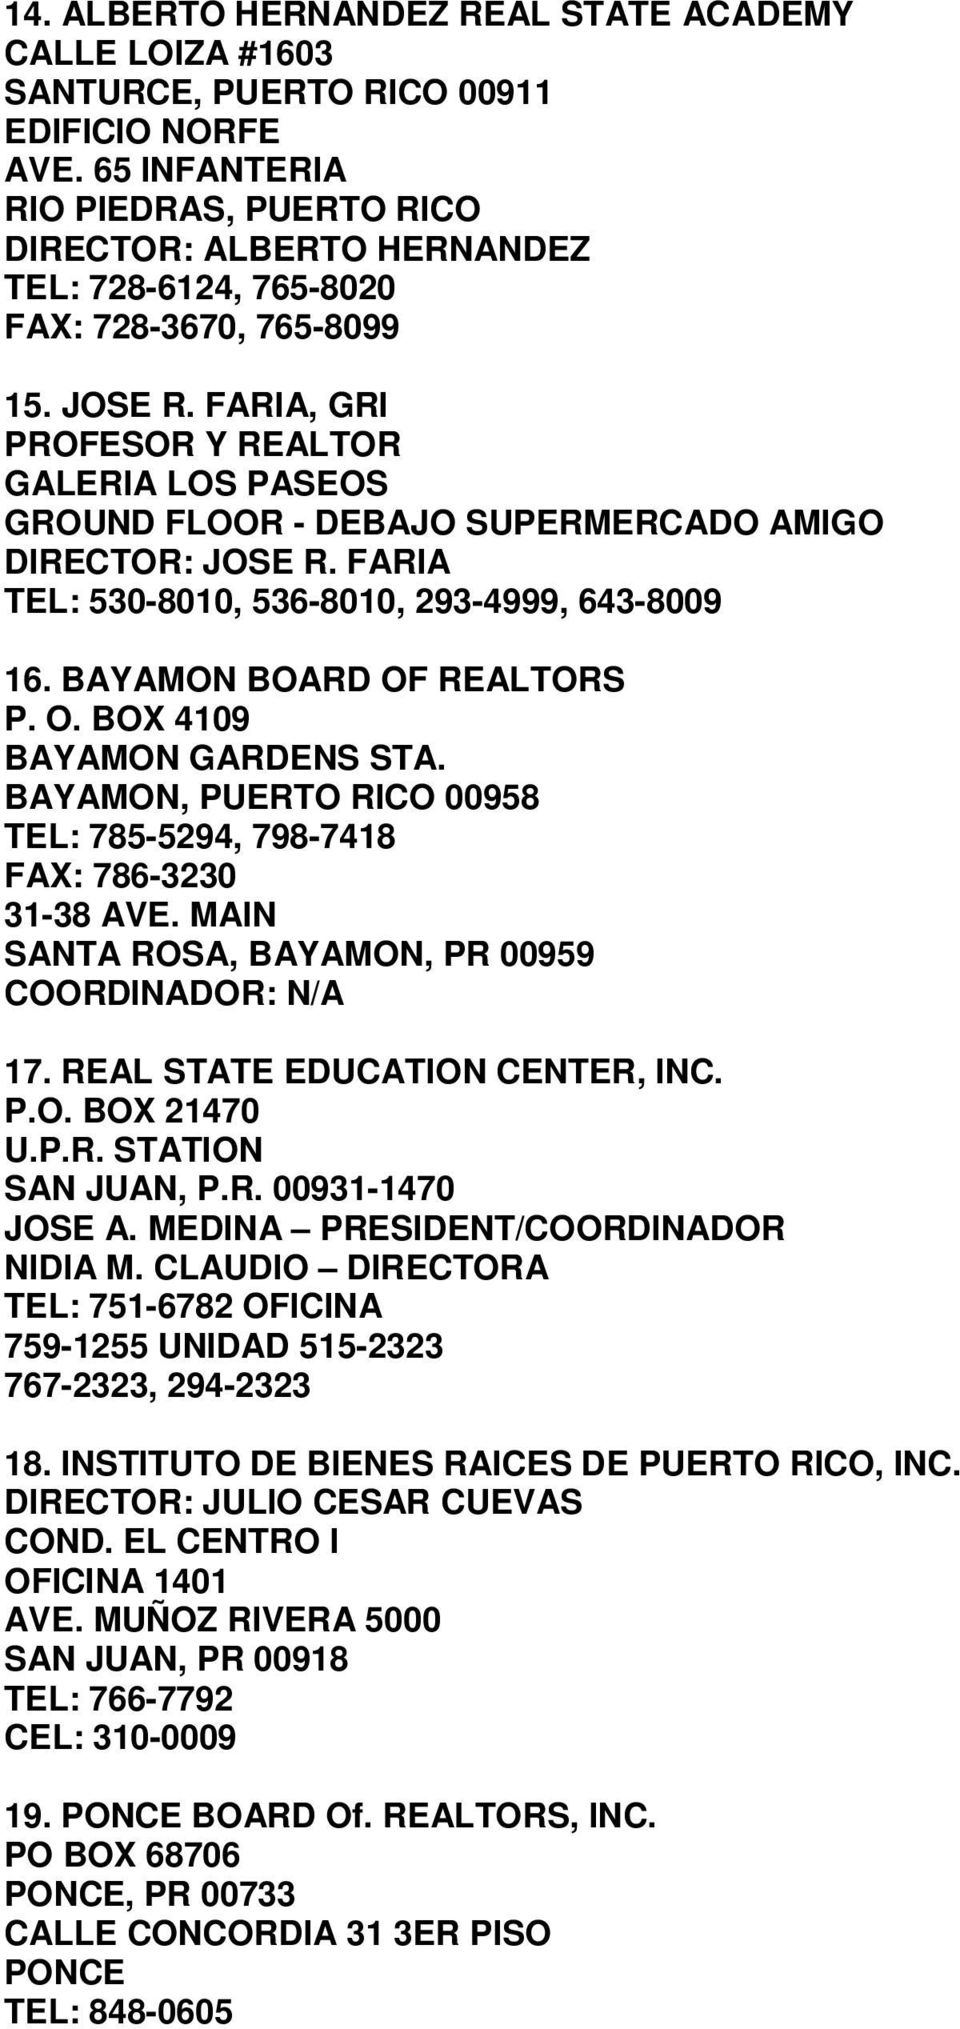 FARIA, GRI PROFESOR Y REALTOR GALERIA LOS PASEOS GROUND FLOOR - DEBAJO SUPERMERCADO AMIGO DIRECTOR: JOSE R. FARIA TEL: 530-8010, 536-8010, 293-4999, 643-8009 16. BAYAMON BOARD OF